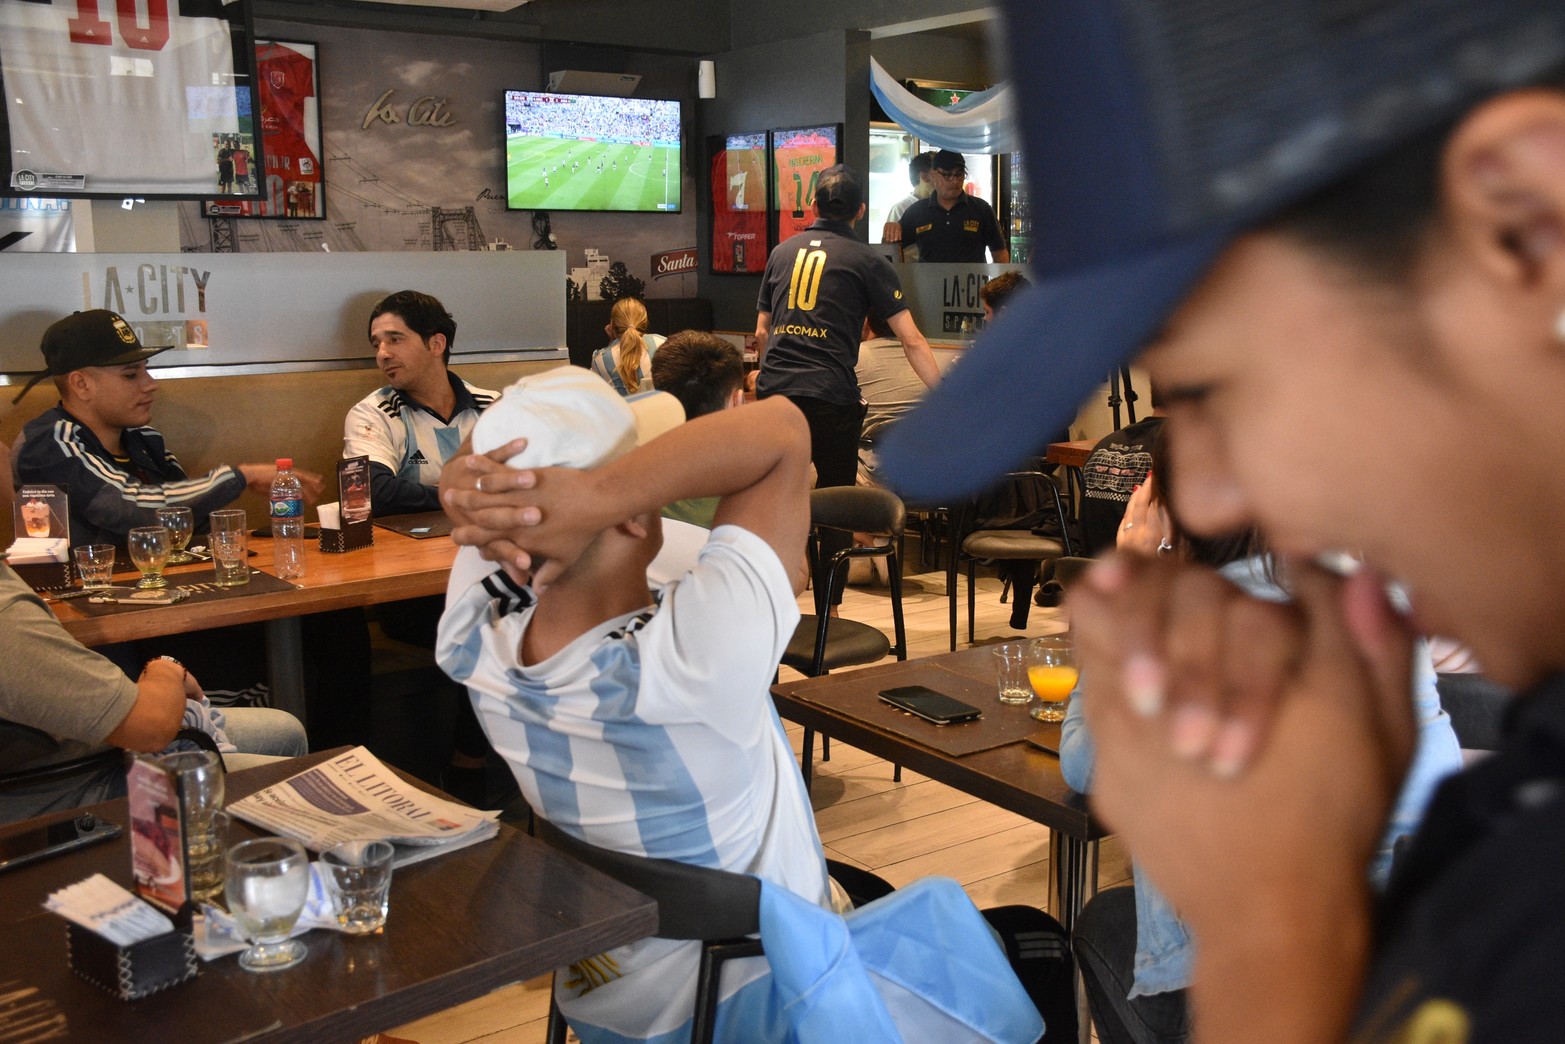 Terminó el partido Argentina cayó ante Arabia Saudita por 2 a 1 en el debut. Foto Flavio Raina